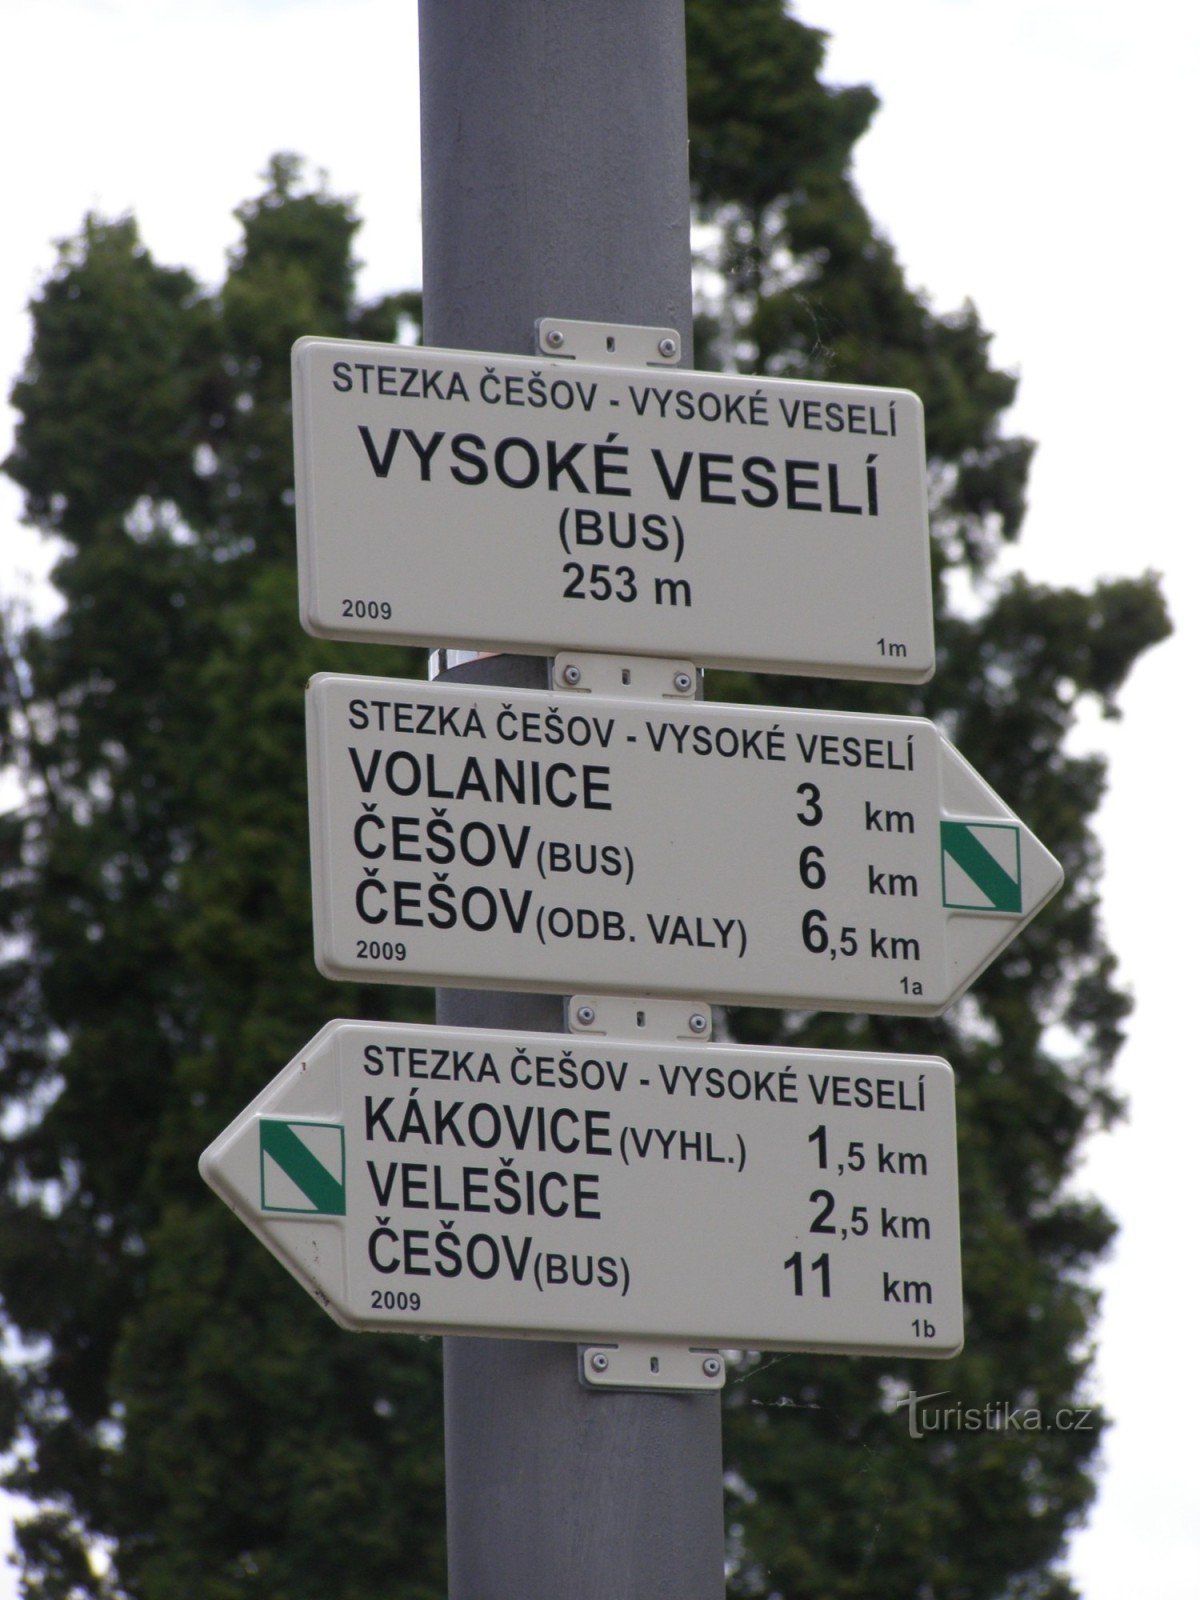 kruising NS Češov-Vysoké Veselí - Vysoké Veselí bus